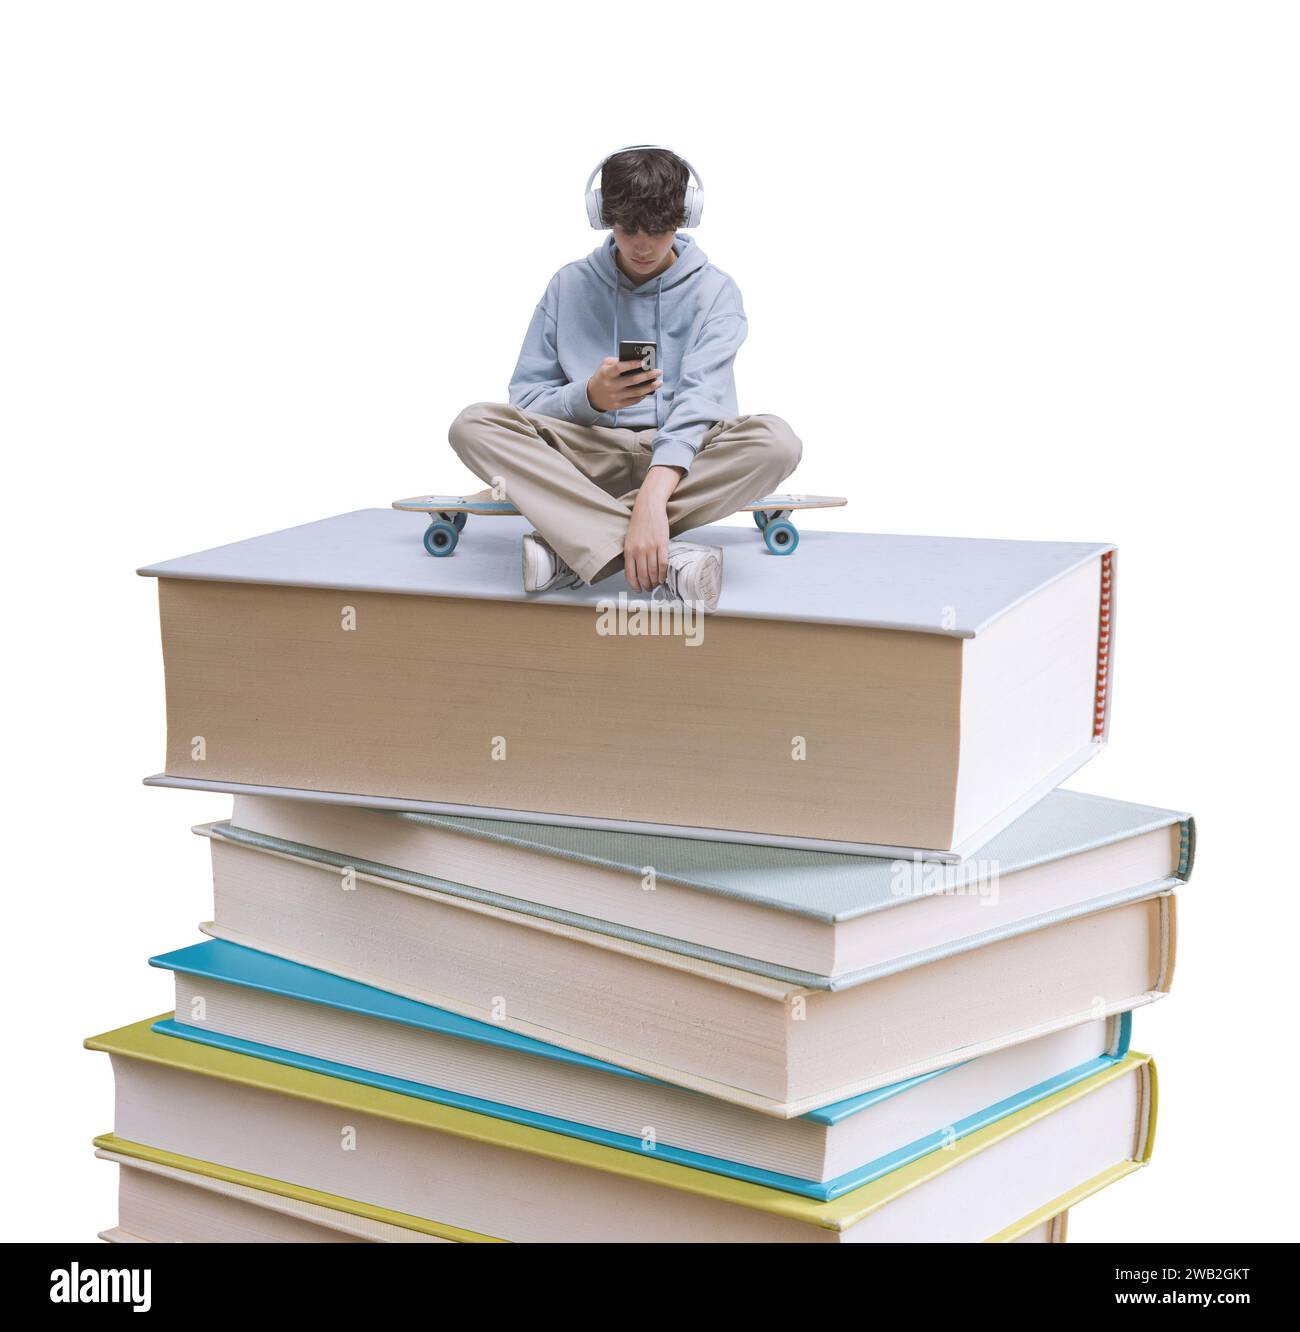 Junge Schülerin, die ein Smartphone benutzt und auf einem Bücherstapel sitzt: Online-Lern- und Bildungskonzept Stockfoto